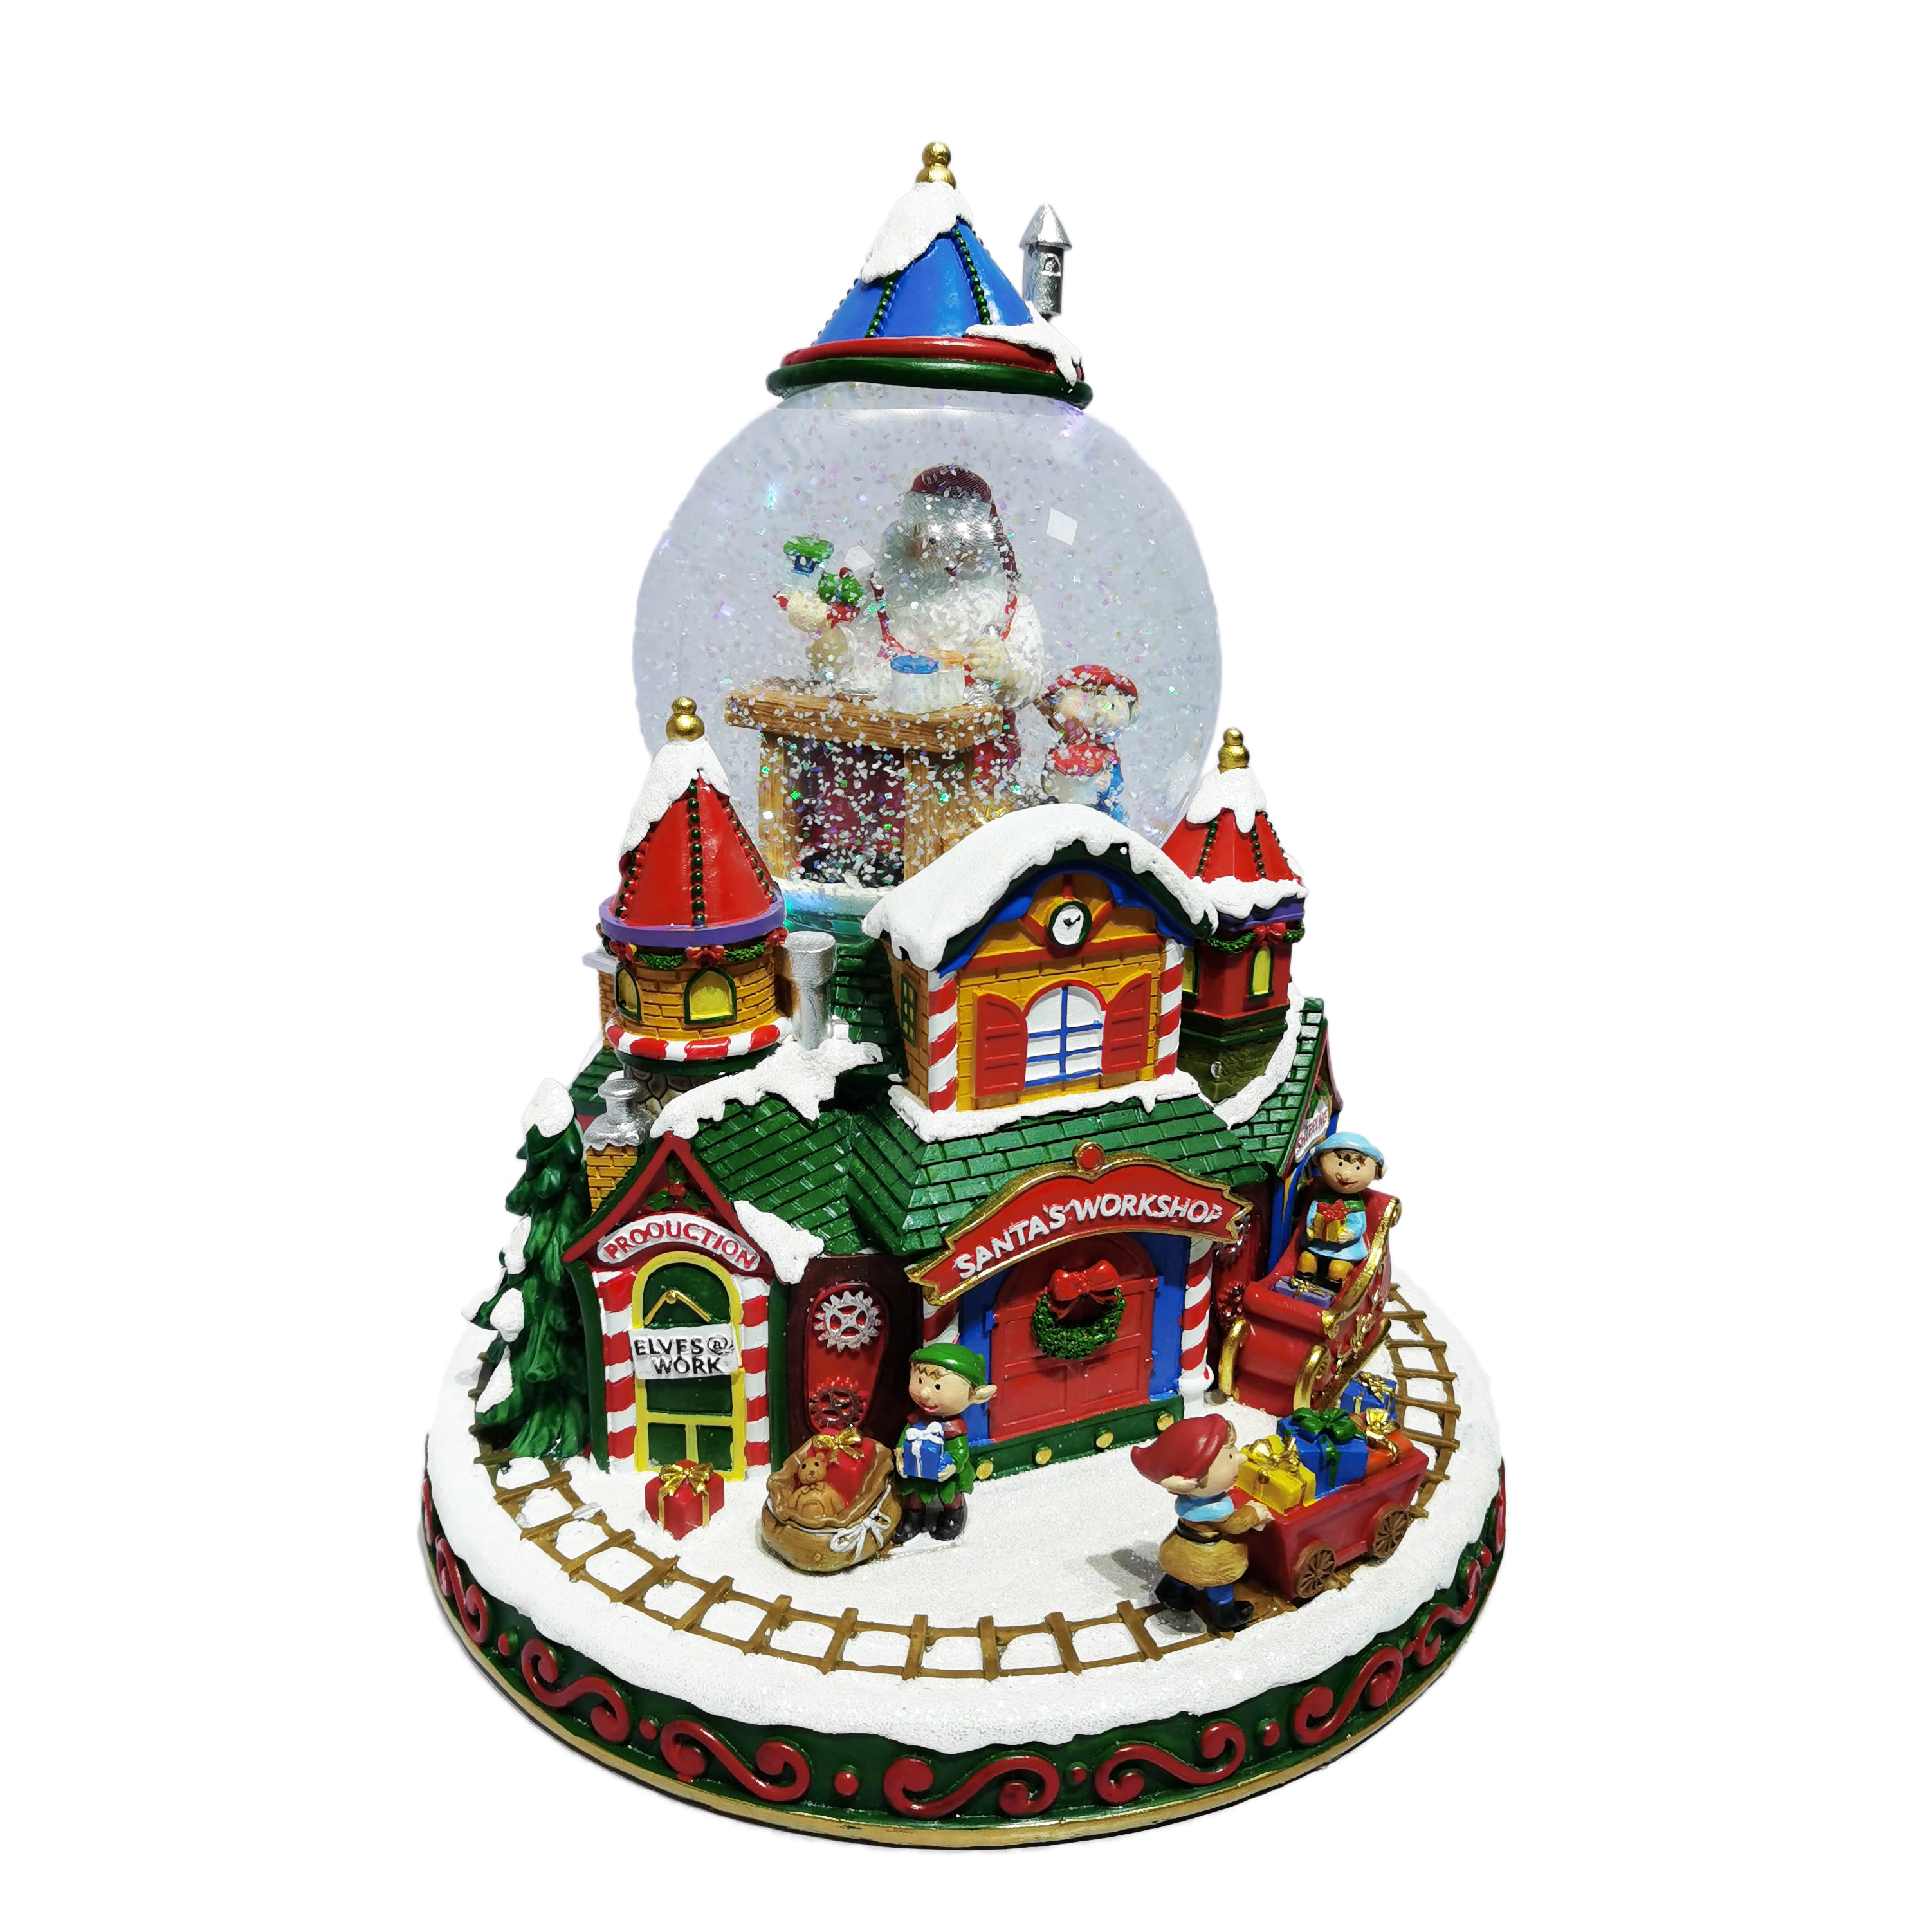 Globo de nieve de Navidad de pueblo iluminado colorido giratorio personalizado de resina con música para decoración de festivales